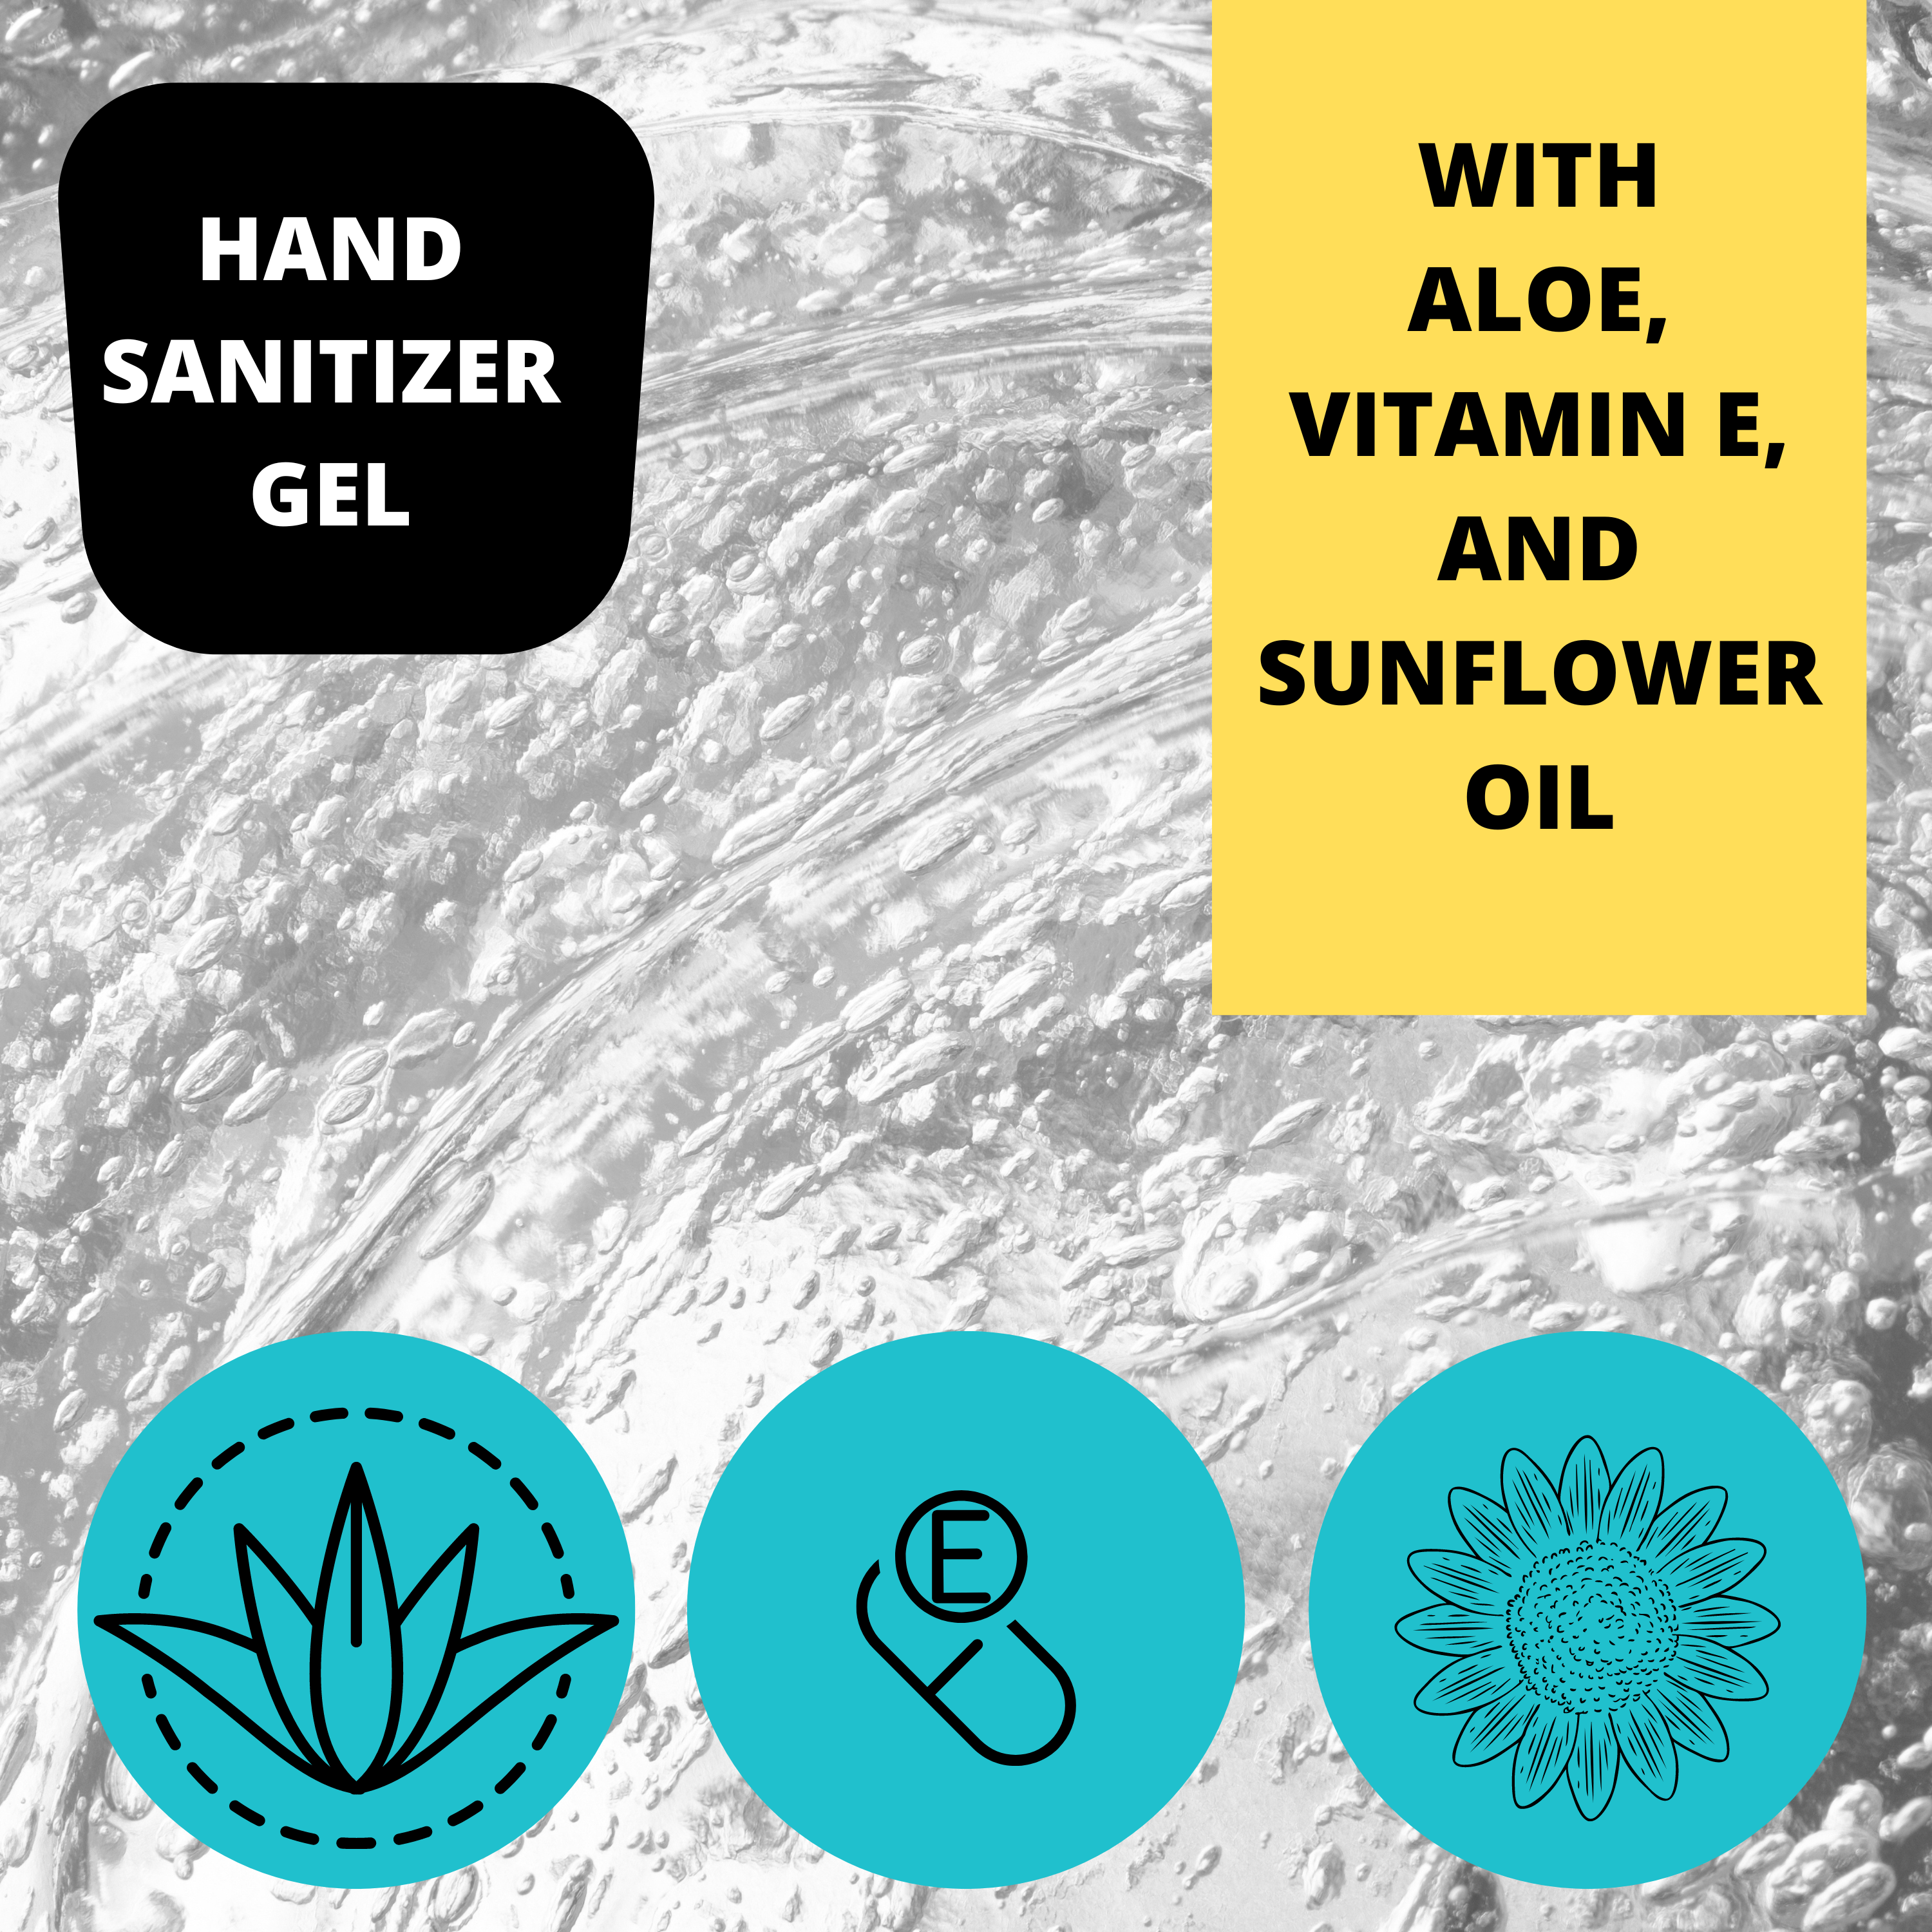 Black Canyon Bug Juice Scented Hand Sanitizer Gel